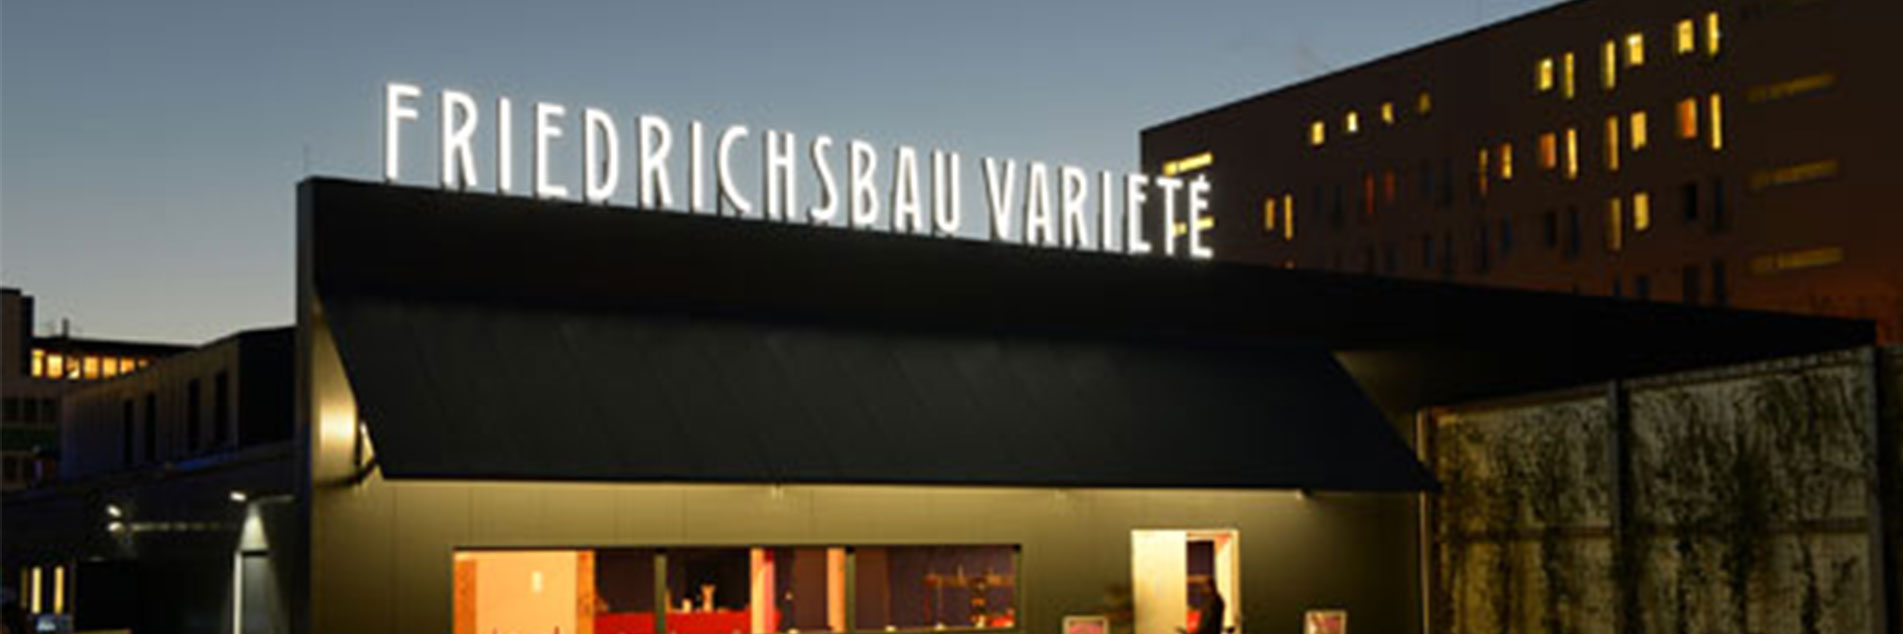 Vorhang auf – für das Friedrichsbau Varieté in Stuttgart